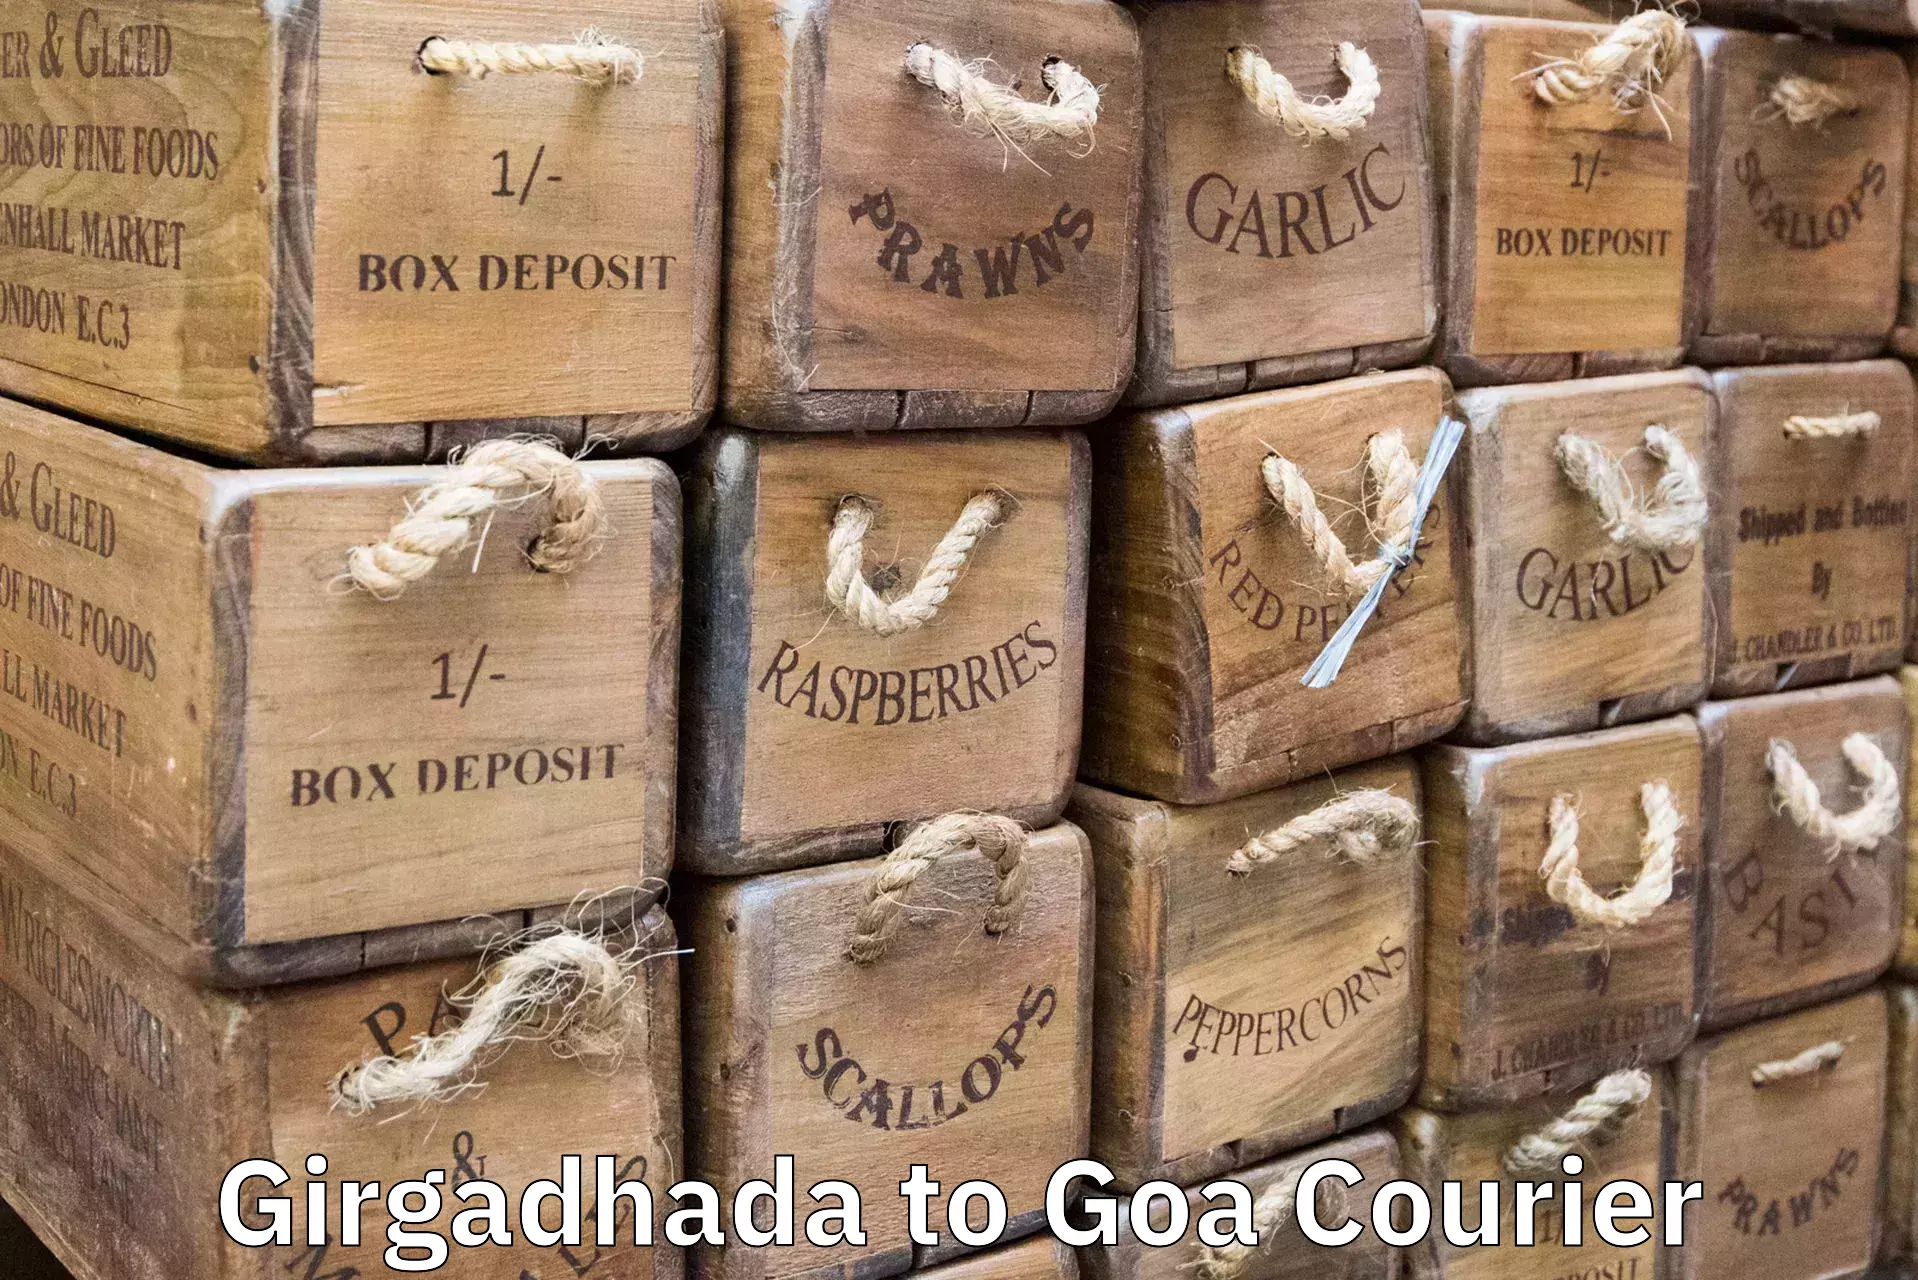 Discounted baggage transport Girgadhada to Goa